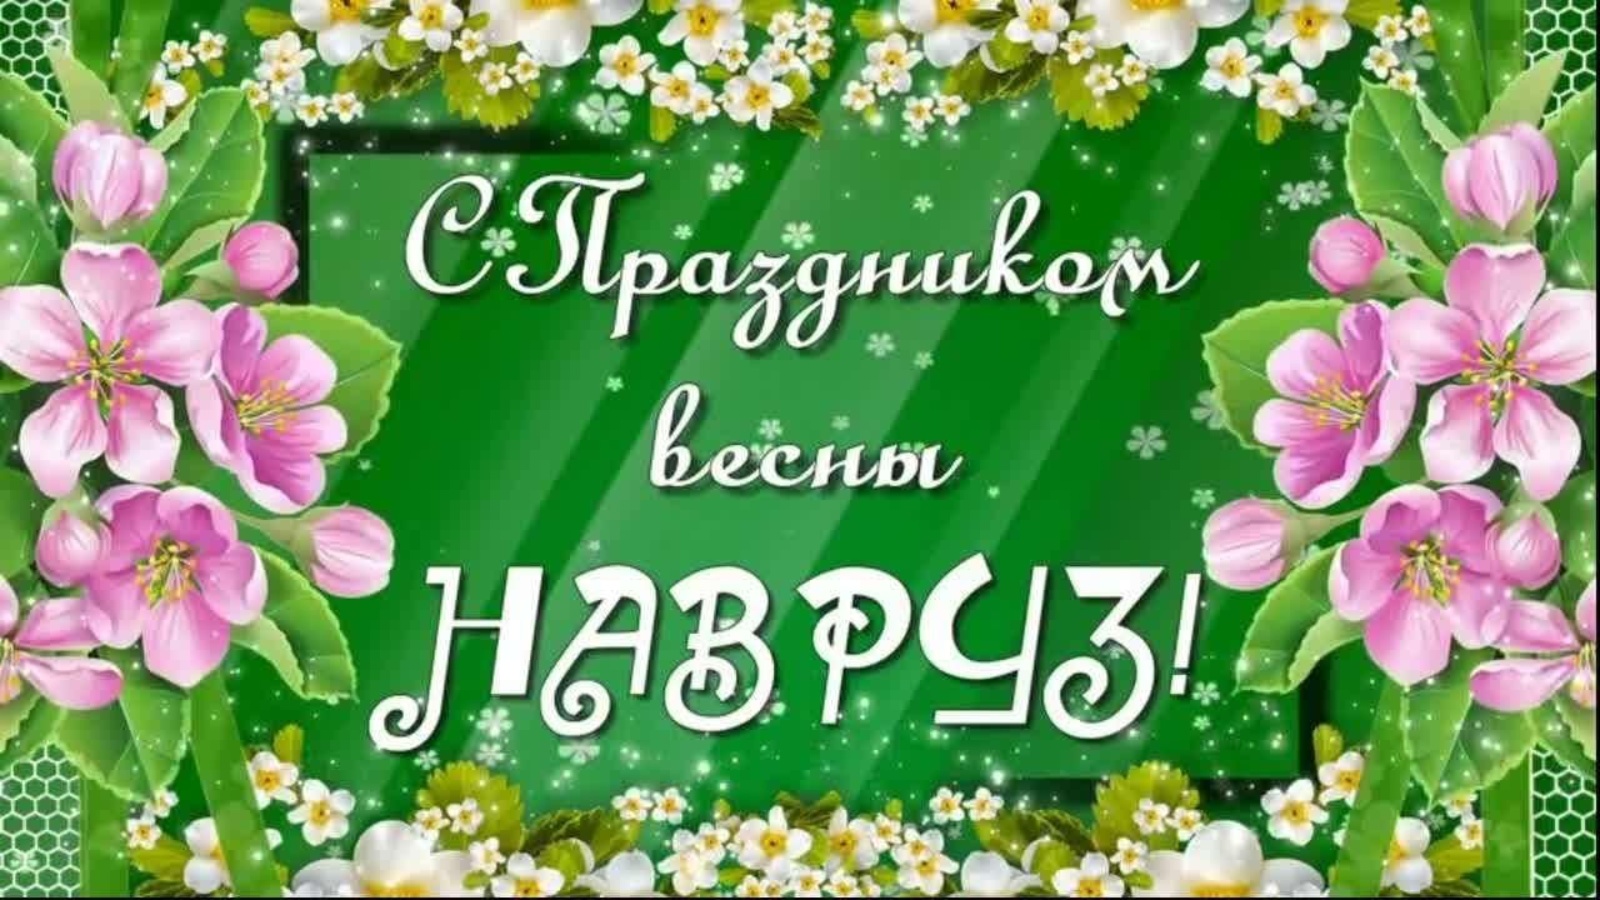 Поздравление с наврузом на таджикском языке. С праздником Навруз. С праздником наврўзнаврўз. Праздник новый. Навруз праздник весны.